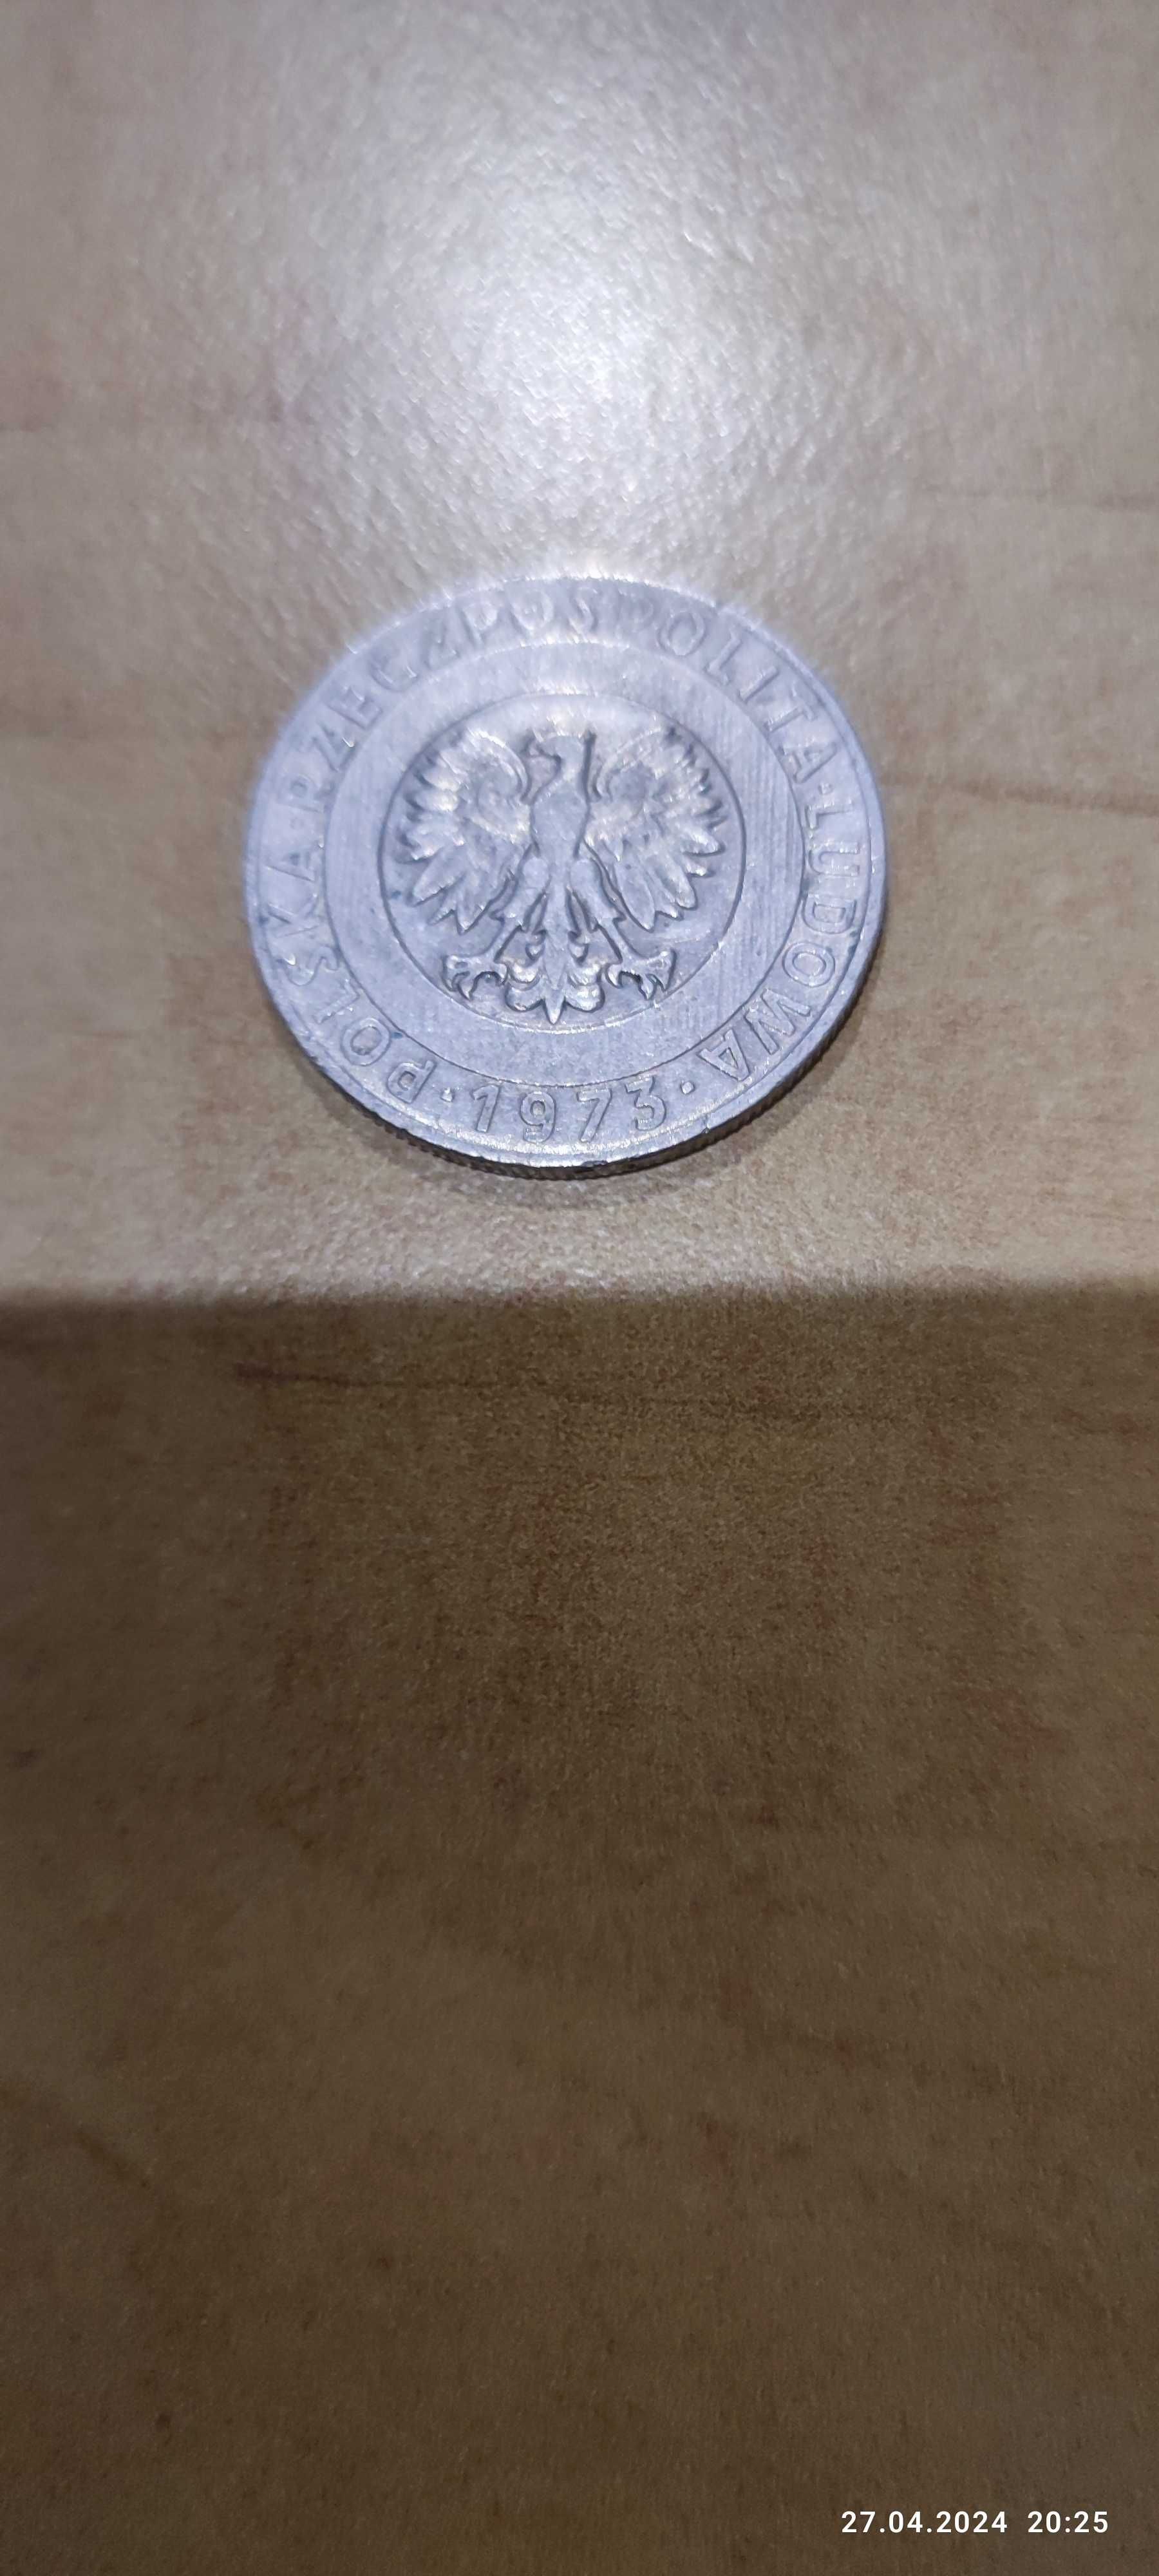 Sprzedam monetę z czasów PRL-u 20 zł z 1973 roku